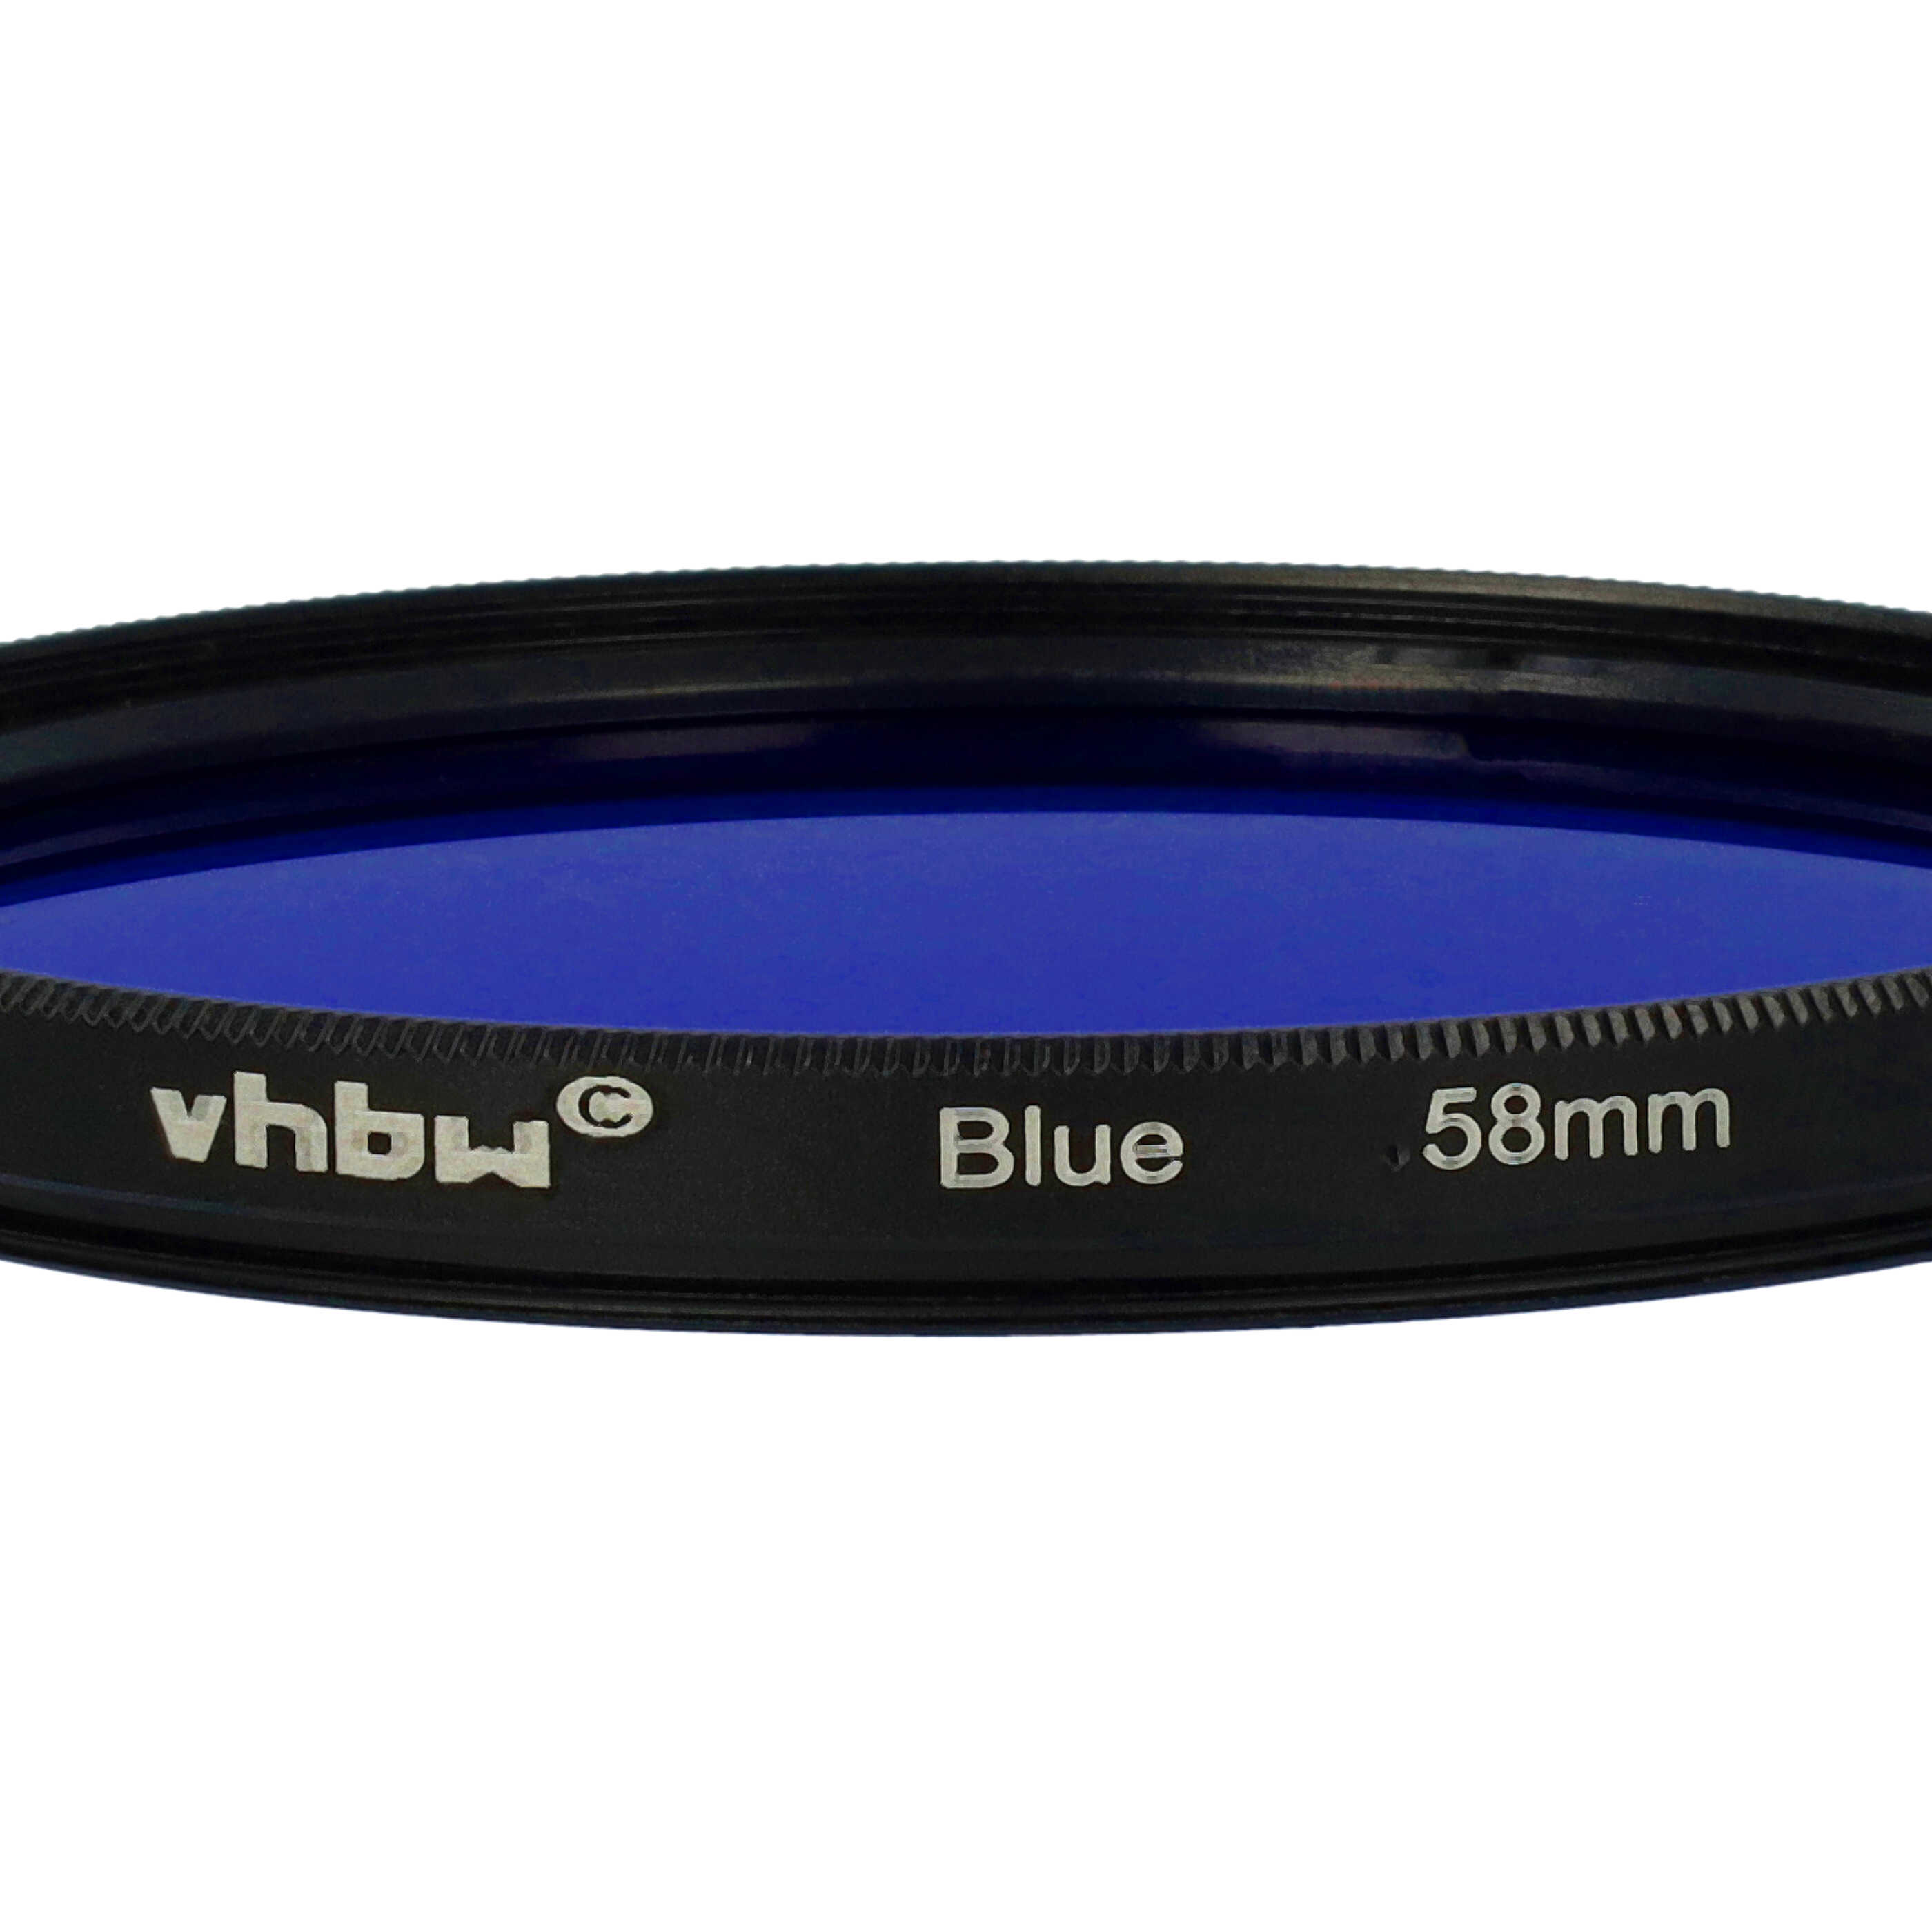 Filtre de couleur bleu pour objectifs d'appareils photo de 58 mm - Filtre bleu